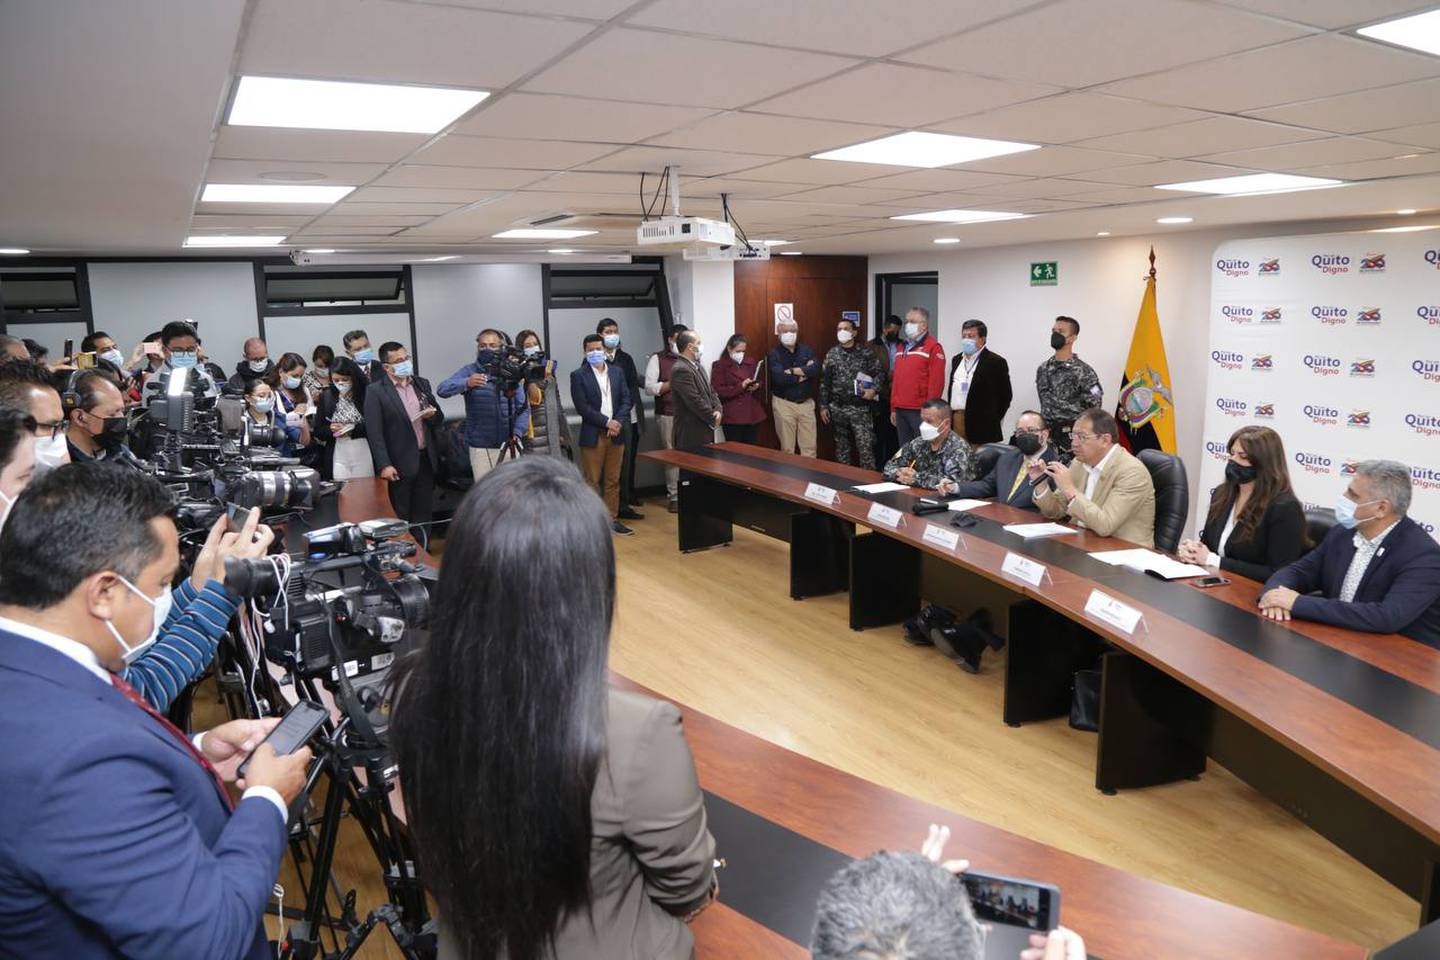 El Metro de Quito iniciará el proceso de puesta en marcha desde el 21 diciembre de 2022